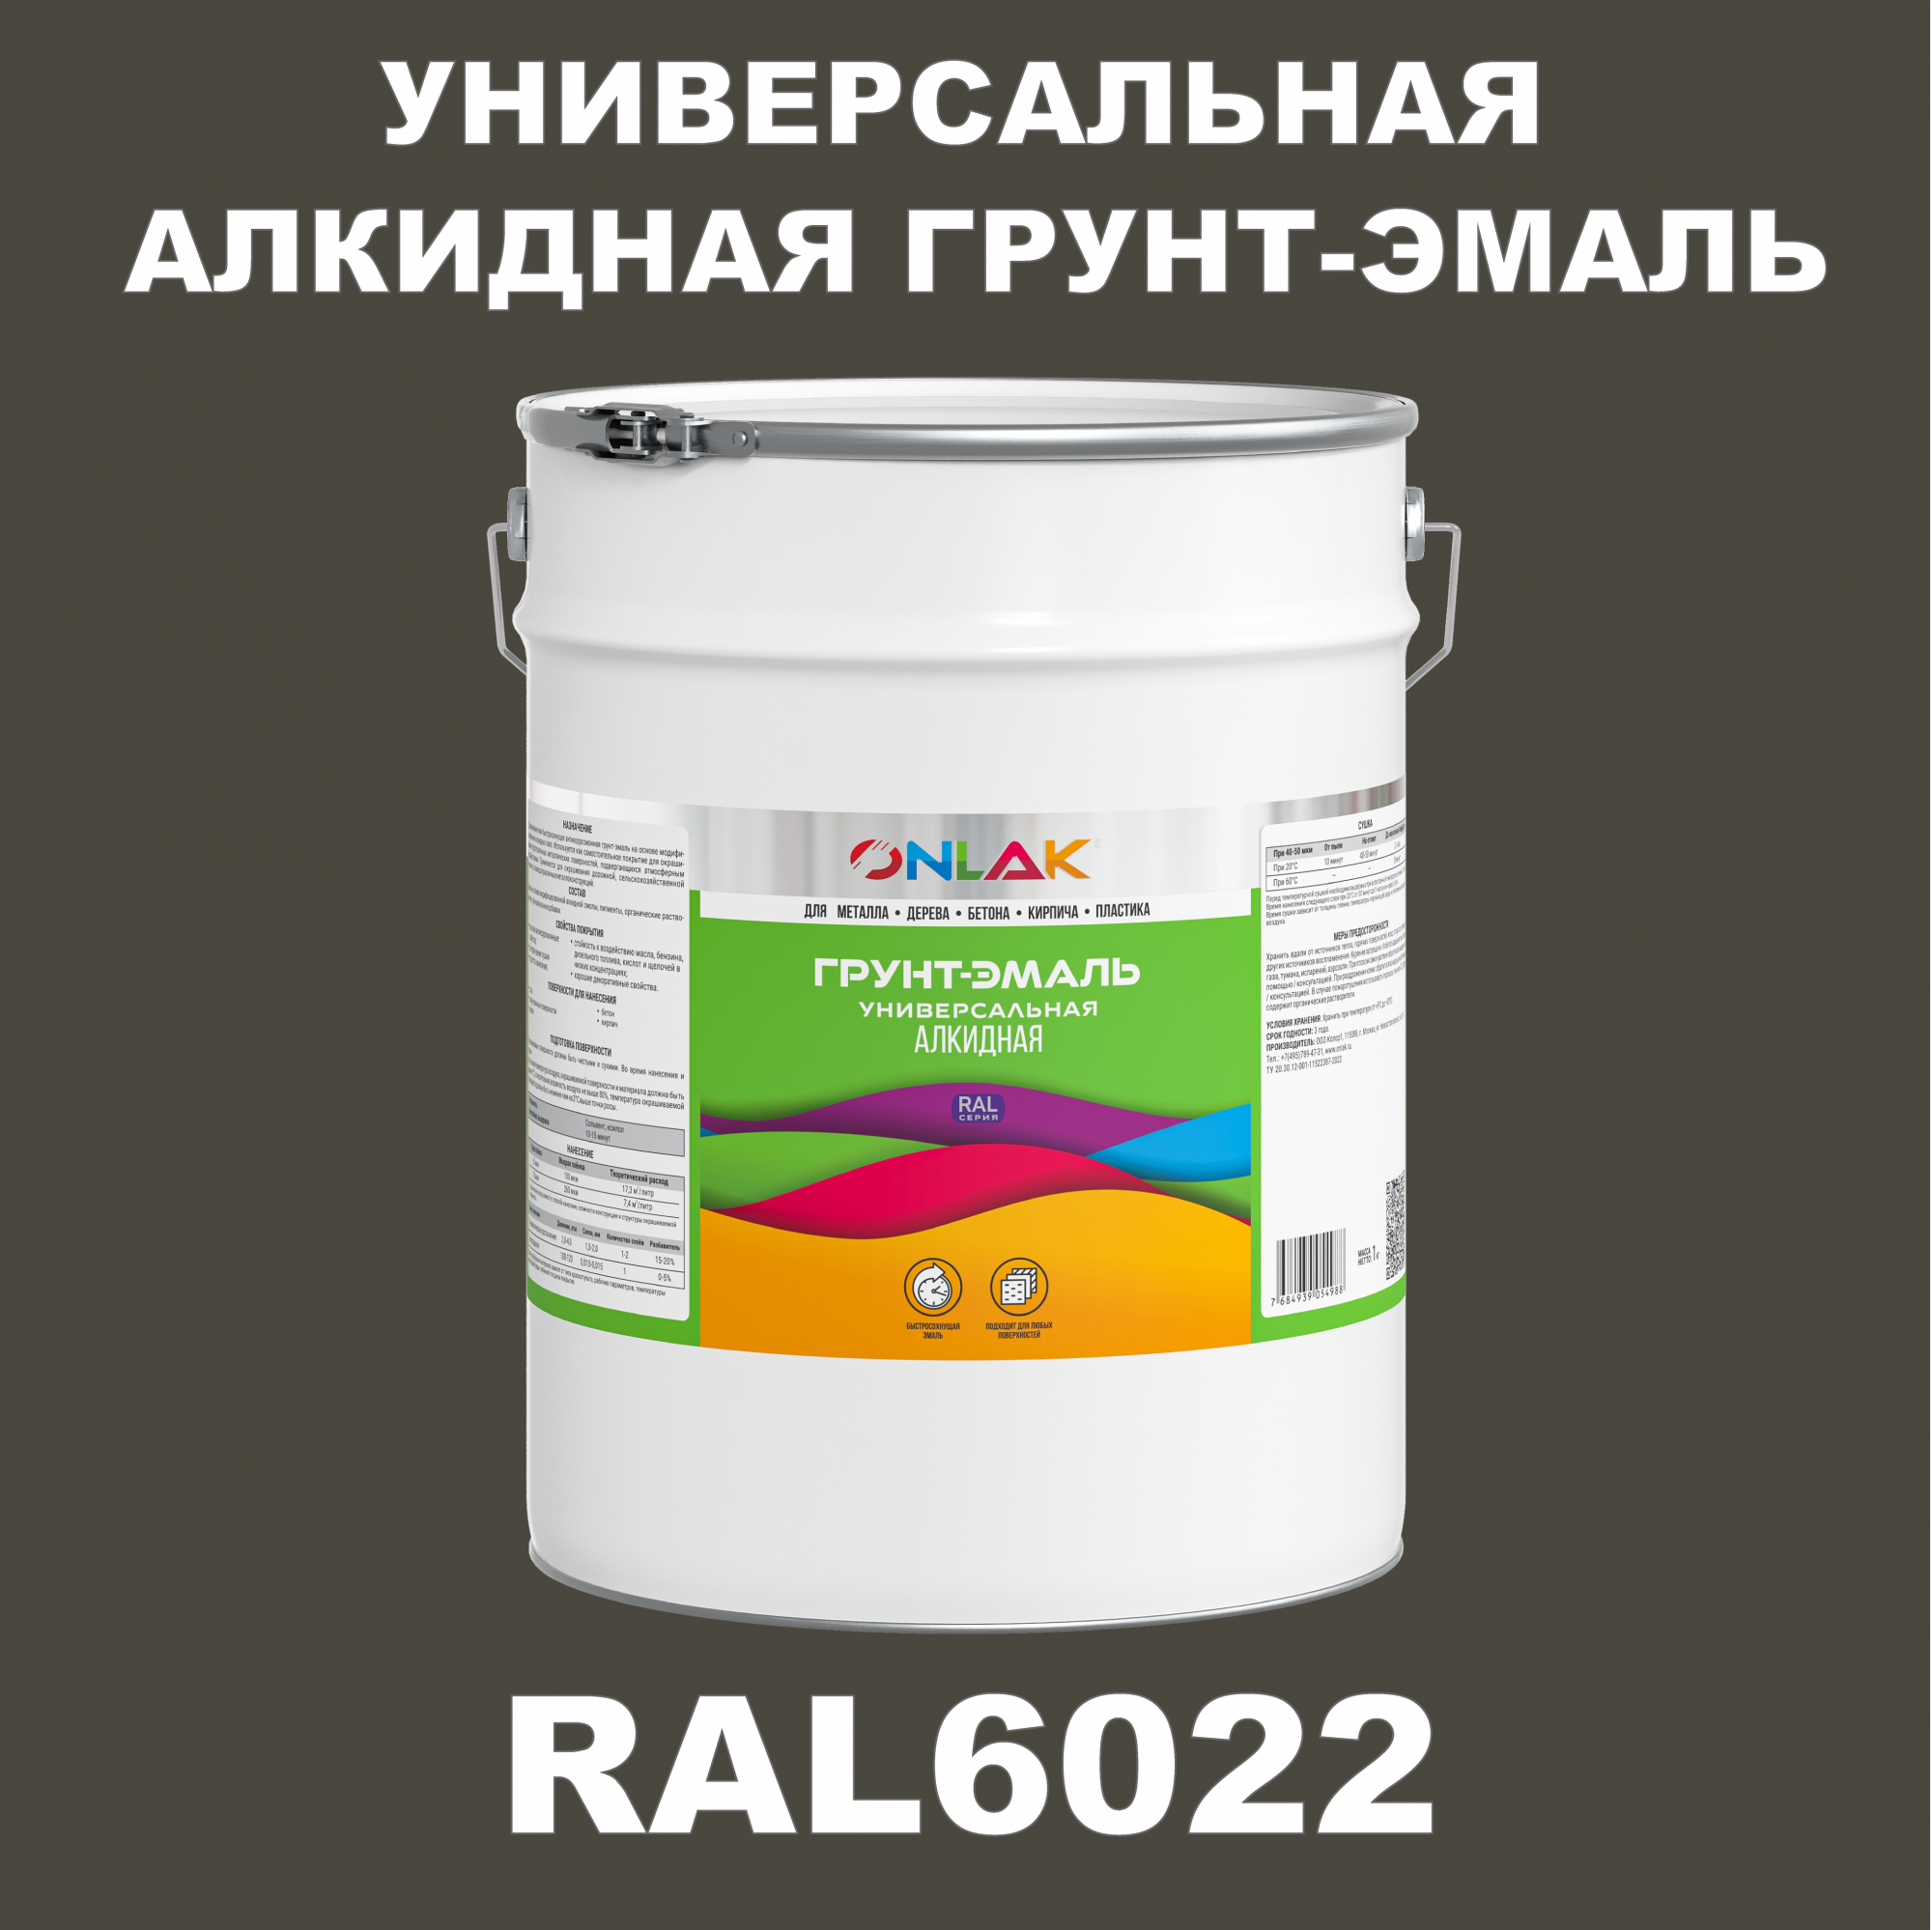 Грунт-эмаль ONLAK 1К RAL6022 антикоррозионная алкидная по металлу по ржавчине 20 кг грунт эмаль yollo по ржавчине алкидная синяя 0 9 кг